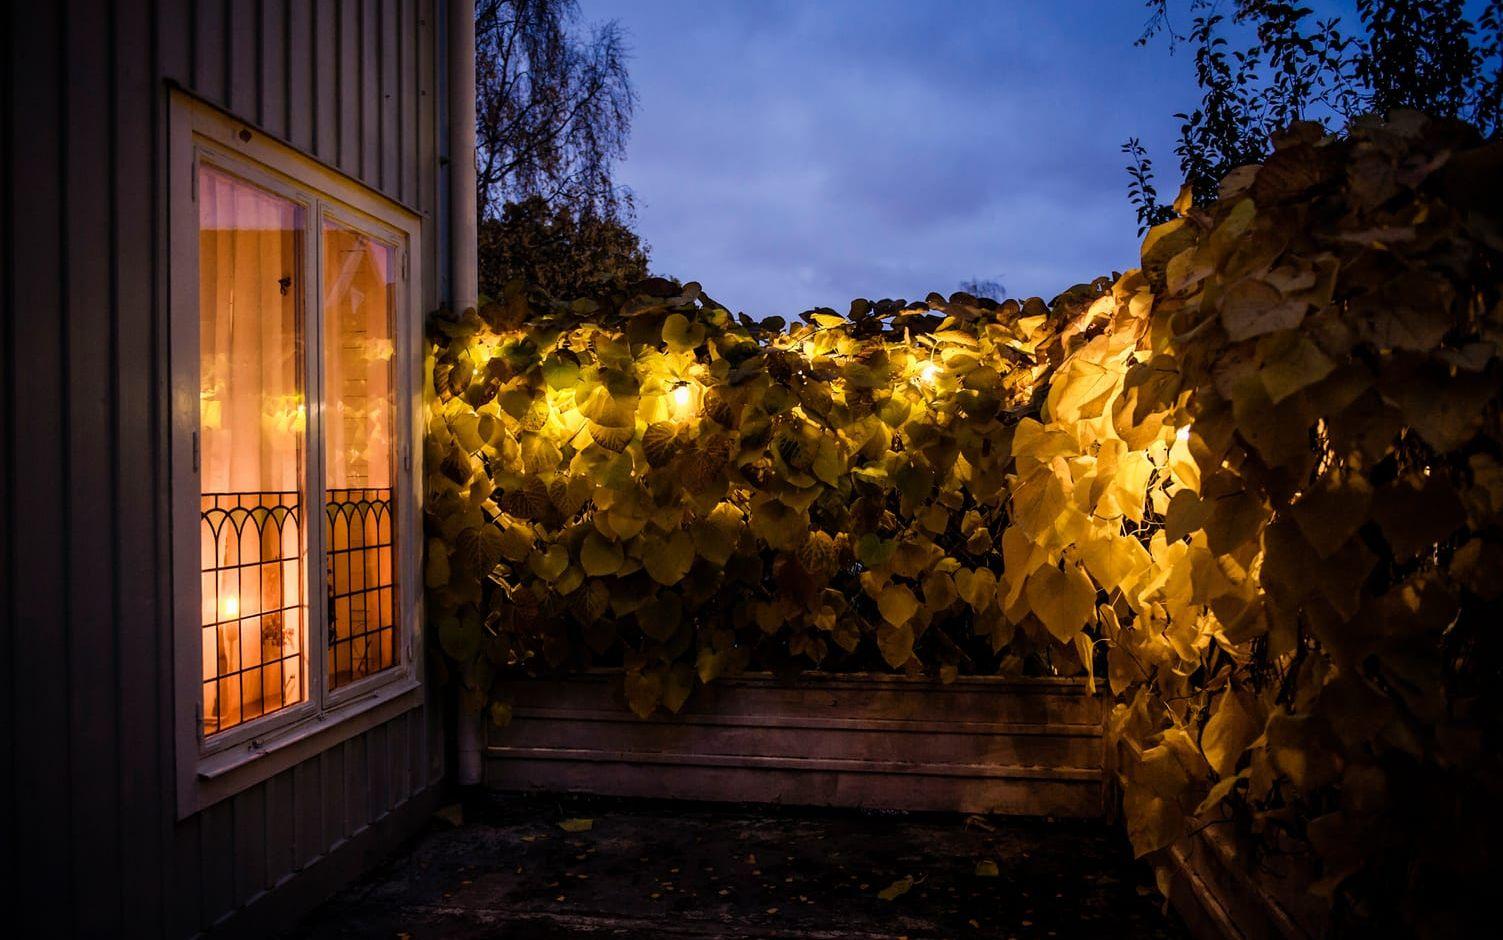 Med hjälp av trädgårdsbelysning kan du göra fint och skapa ett rum utanför fönstret. Se till att belysa det du tycker är vackert och blir glad av att se. Foto: Marc Femenia/TT